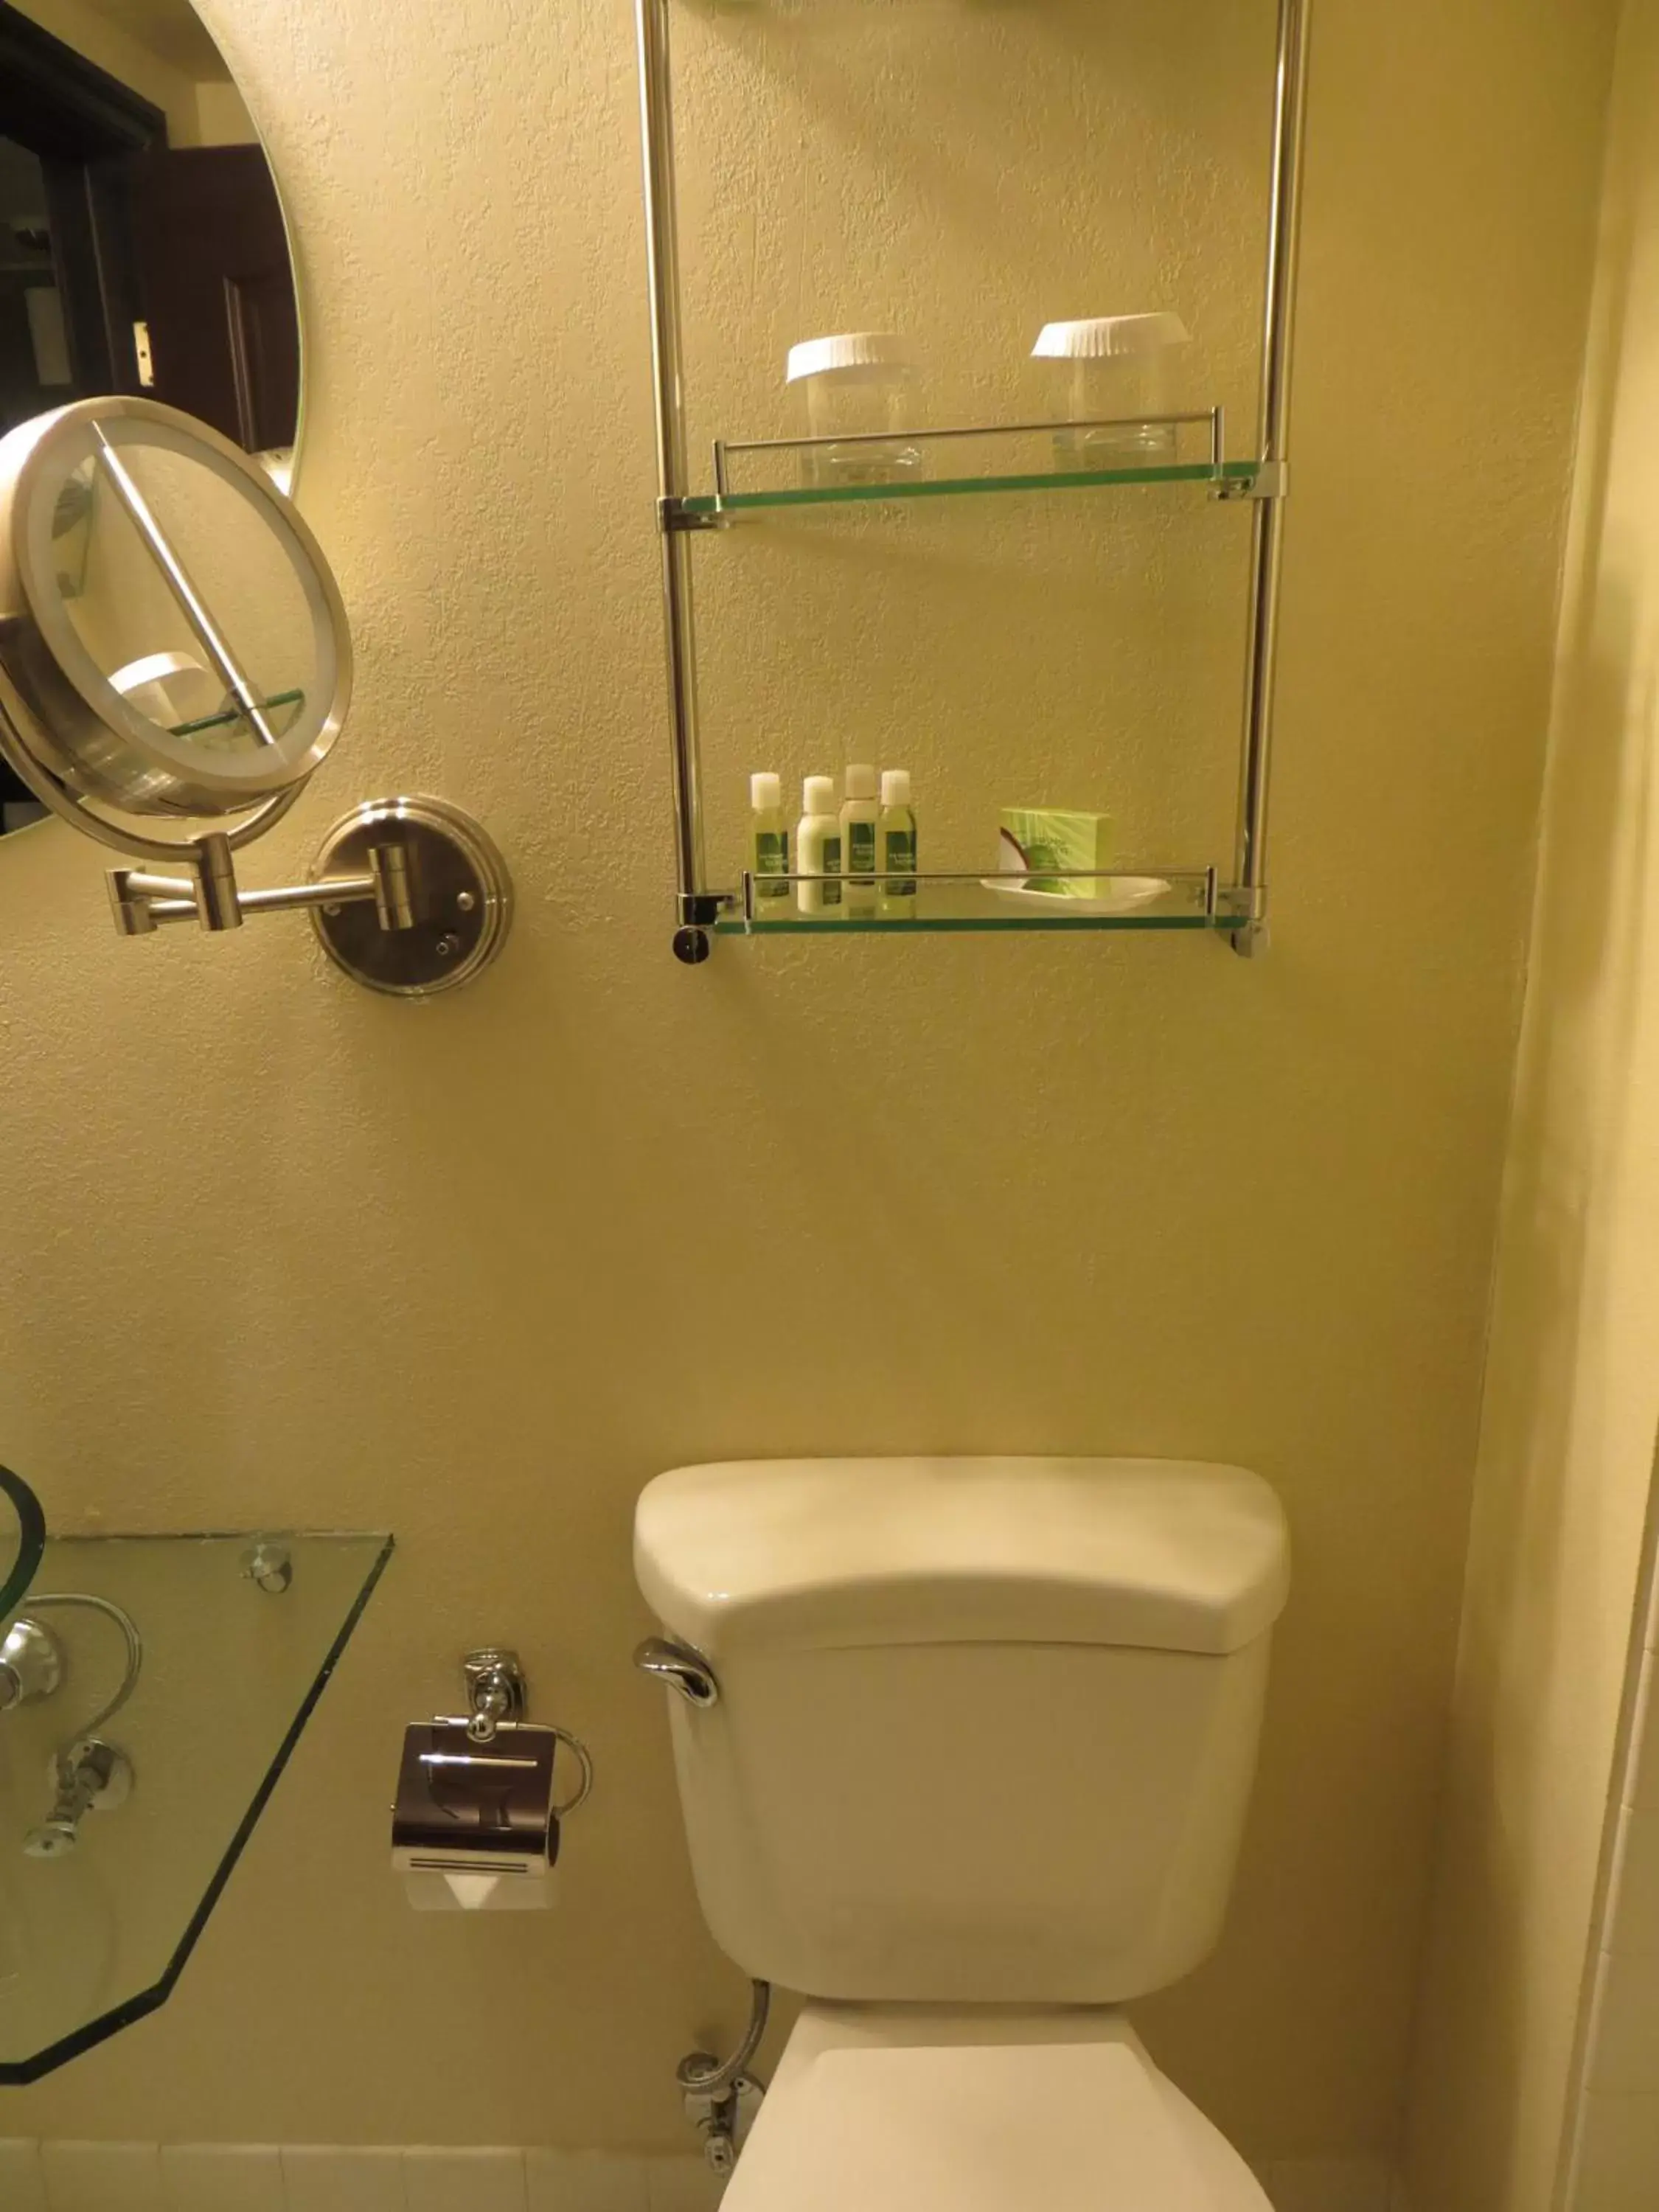 Bathroom in Mark Twain Hotel